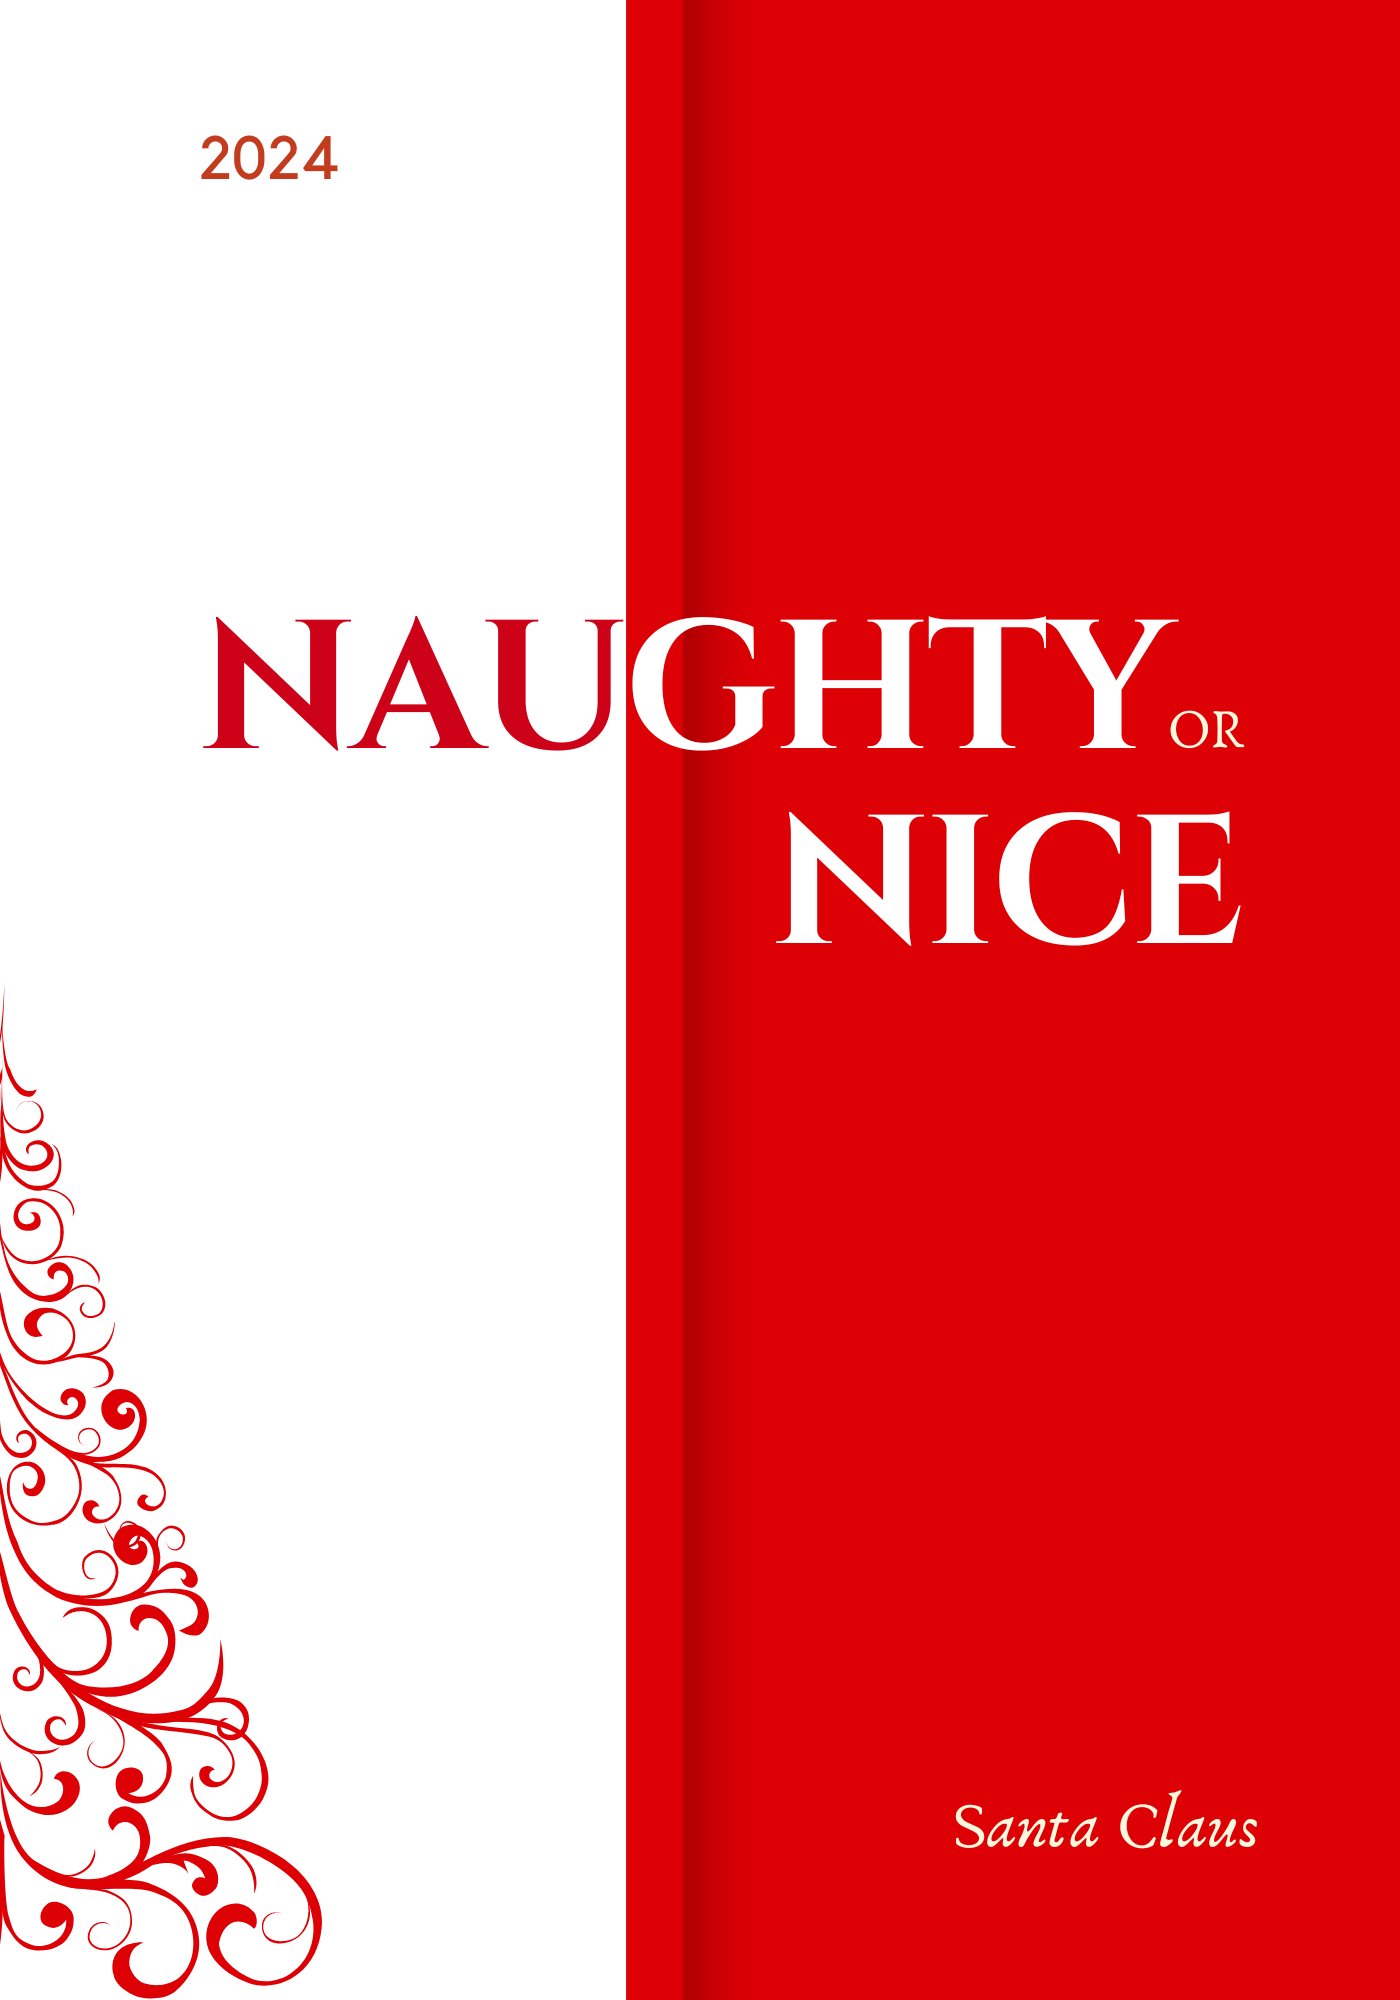 Naughty or nice list